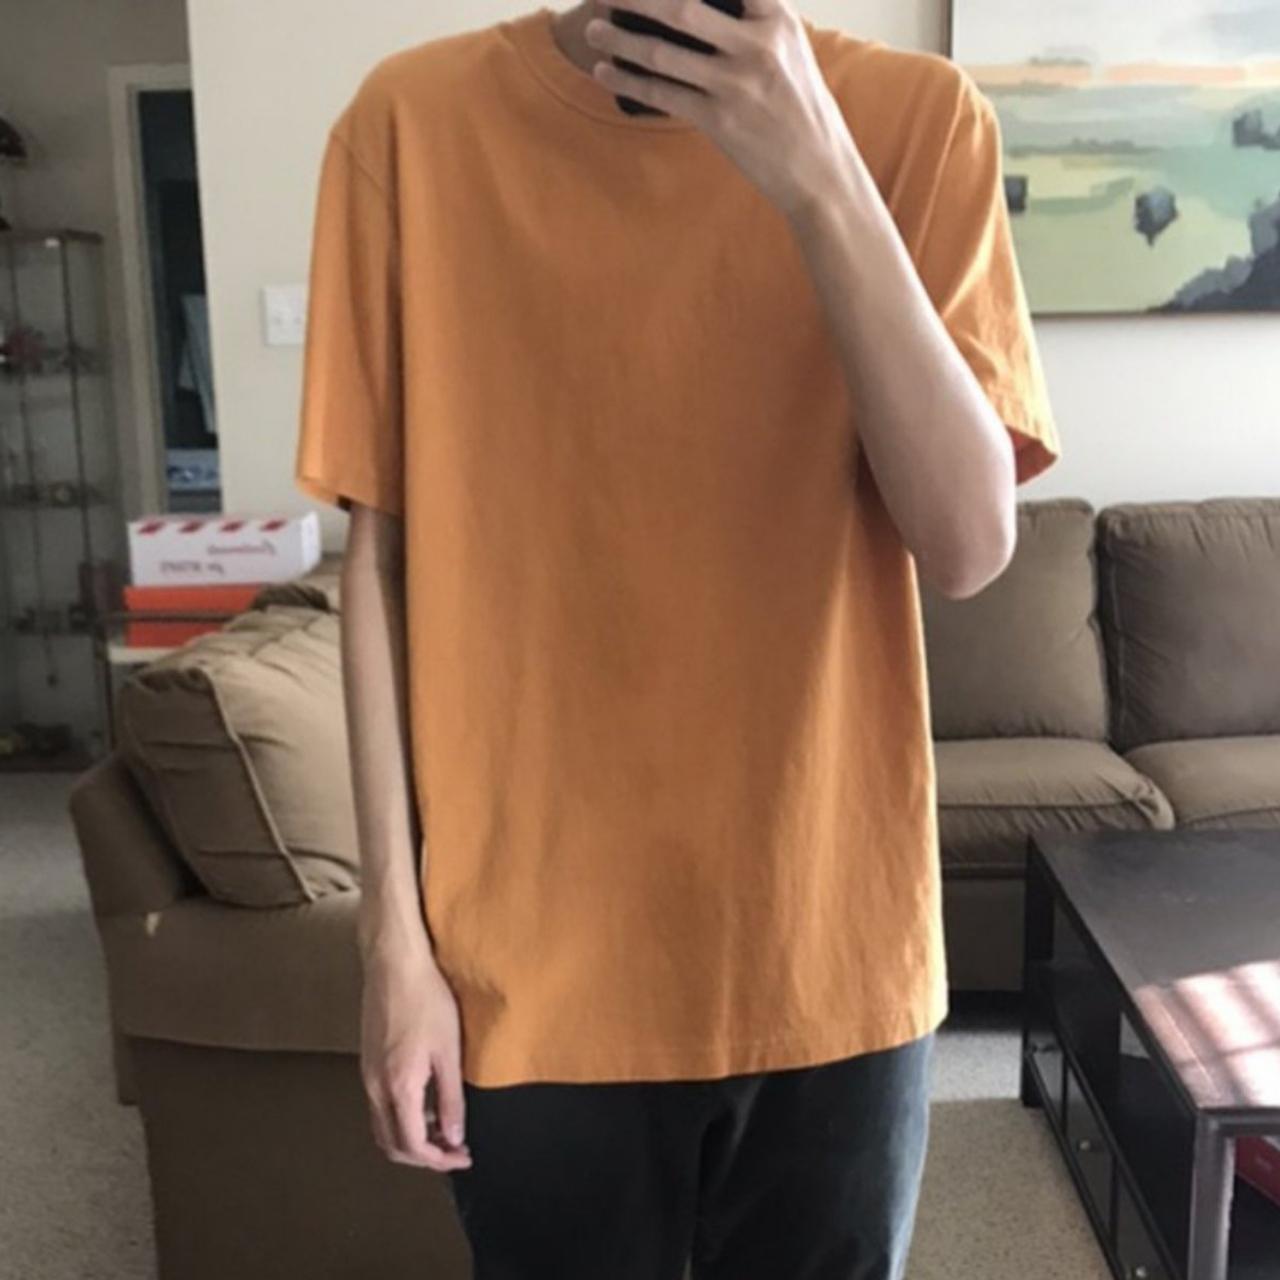 Uniqlo Alien Vs Predator Orange T Shirt Size Small Orange/brown Rare Film  Tee 